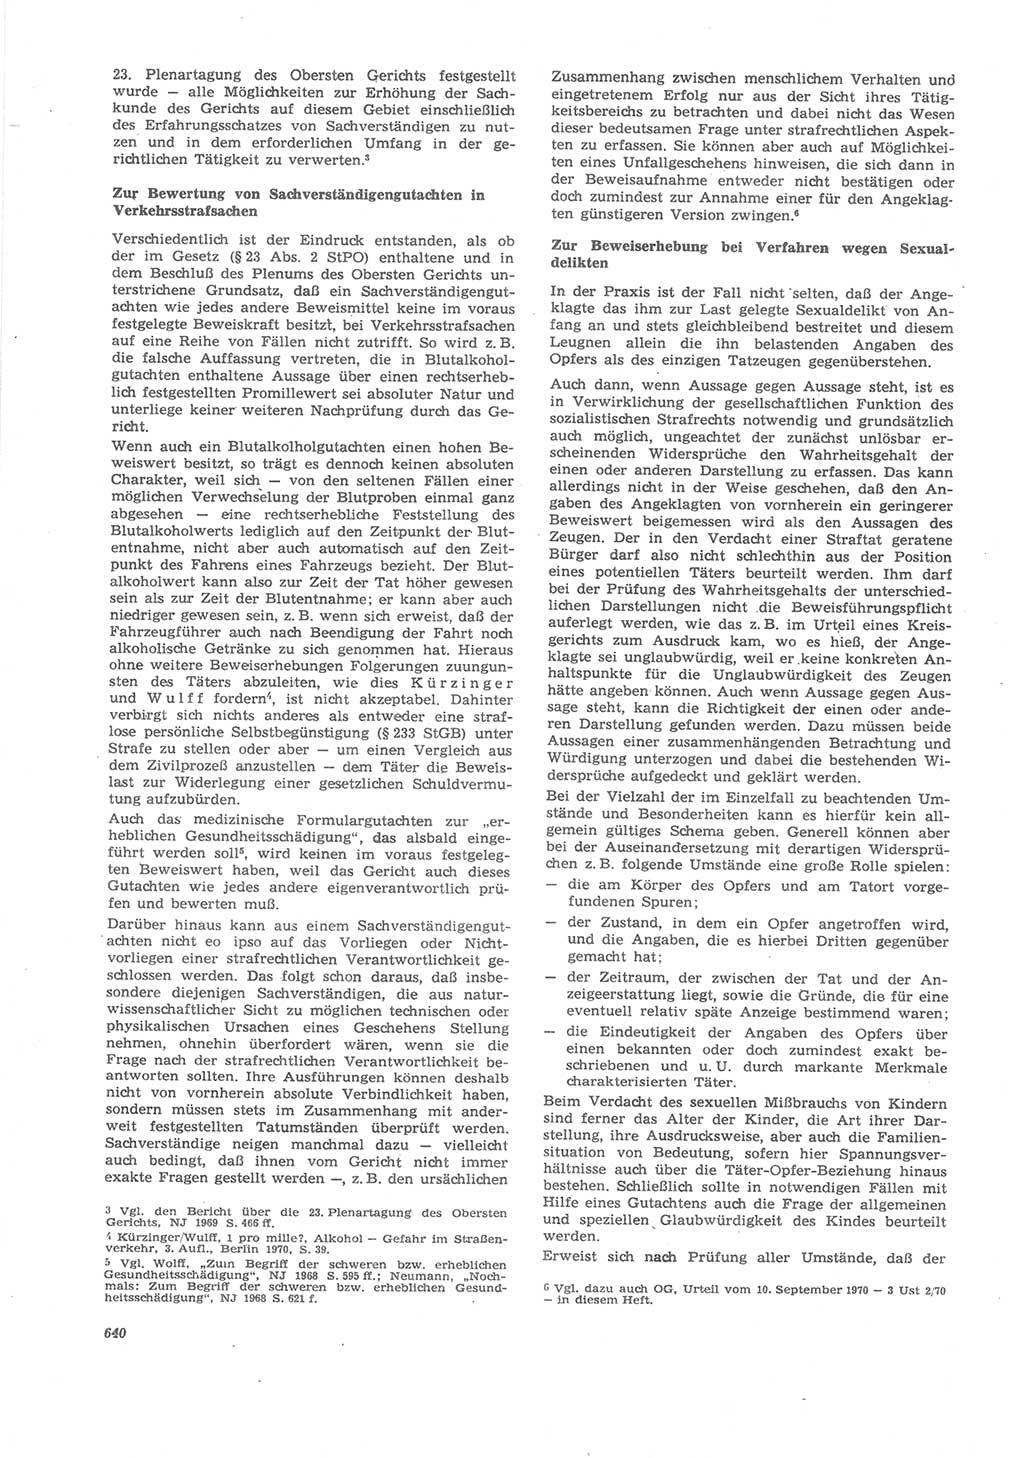 Neue Justiz (NJ), Zeitschrift für Recht und Rechtswissenschaft [Deutsche Demokratische Republik (DDR)], 24. Jahrgang 1970, Seite 640 (NJ DDR 1970, S. 640)